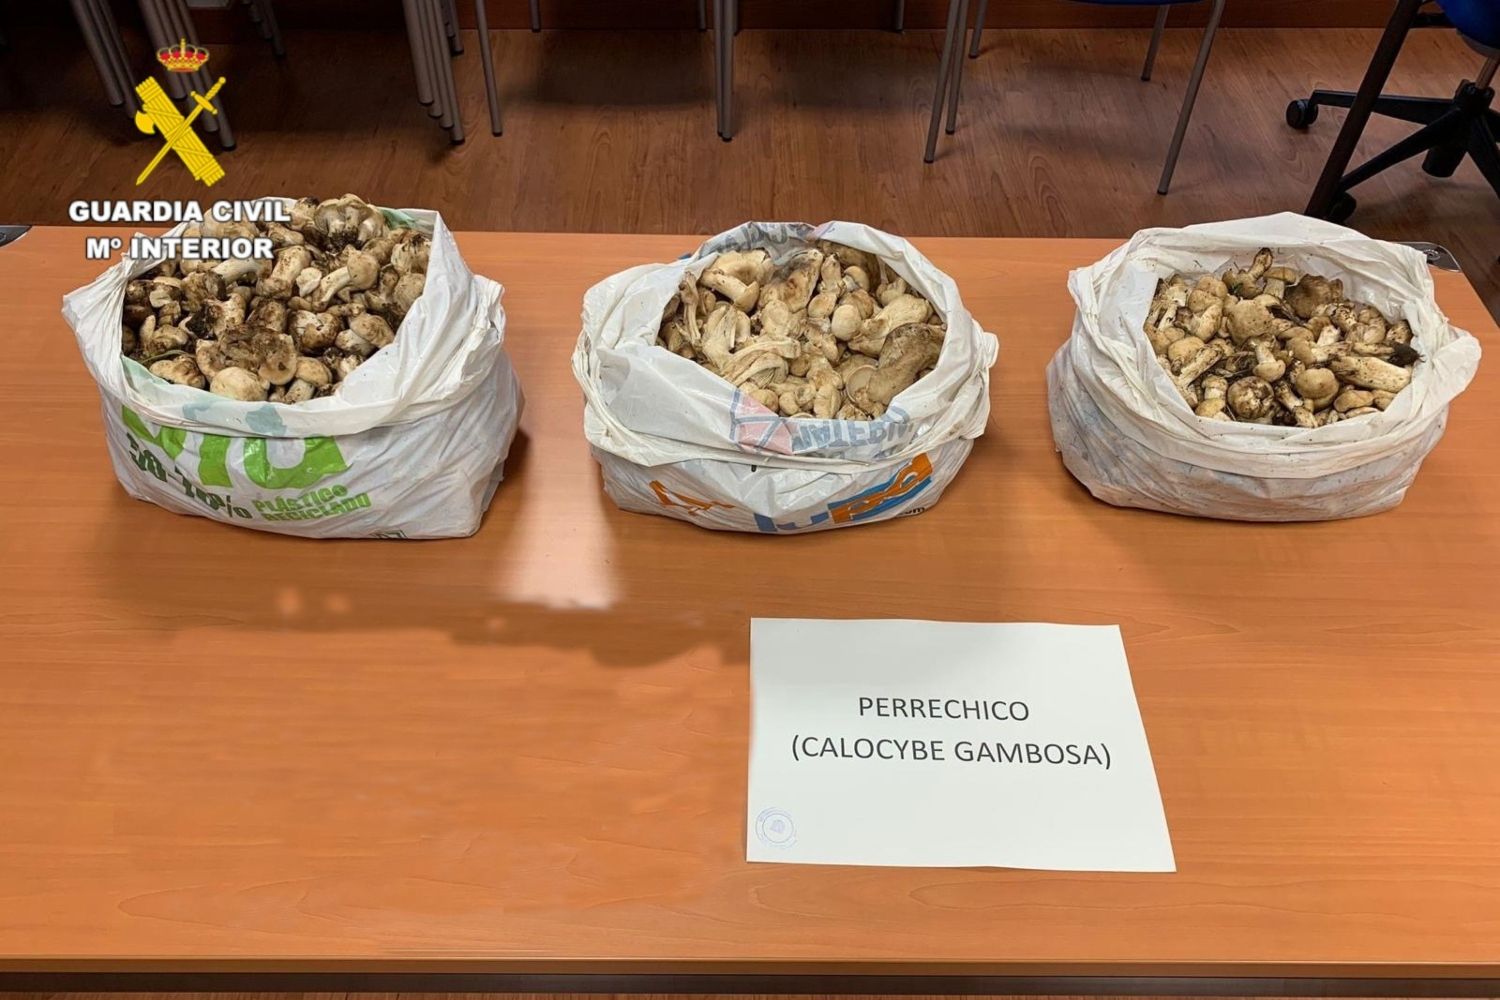 La Guardia Civil requisa más de 13 kilos de setas de San Jorge en La Cueta - Cabrillanes (León)